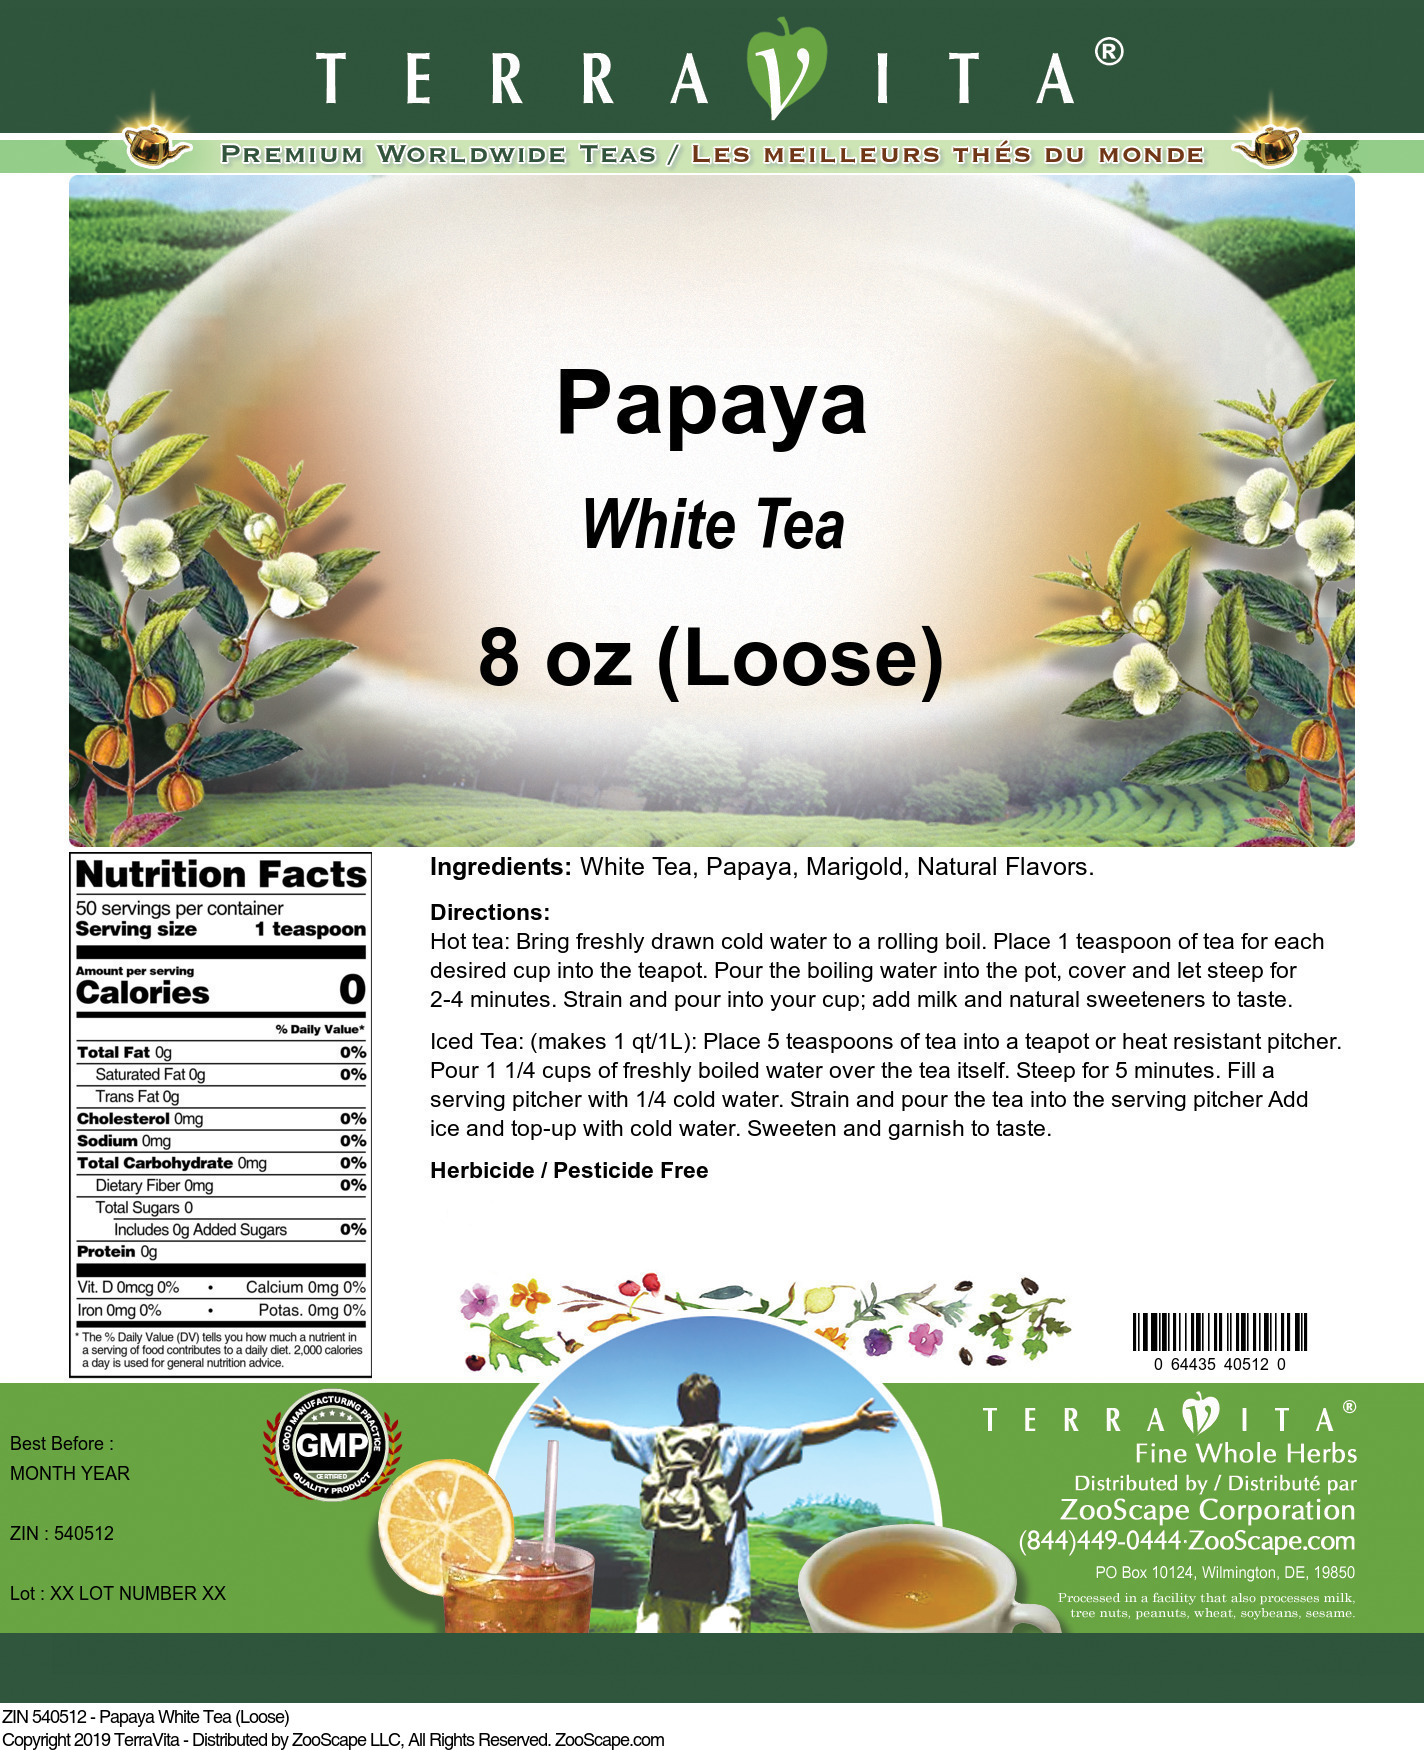 Papaya White Tea (Loose) - Label